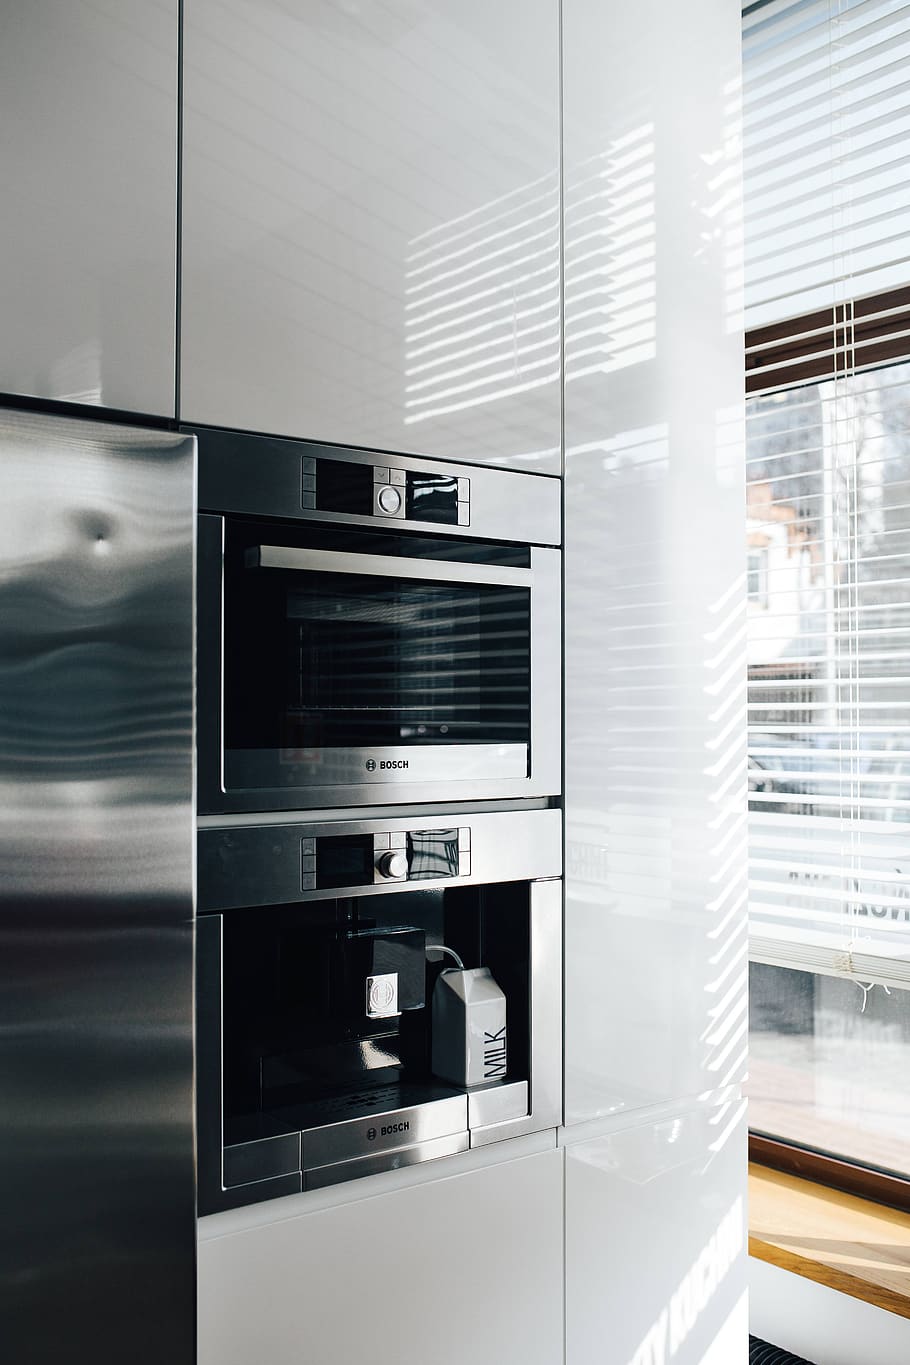 gris, blanco, moderno, contemporáneo, estilo, diseño, cocina, metálico, horno, refrigerador